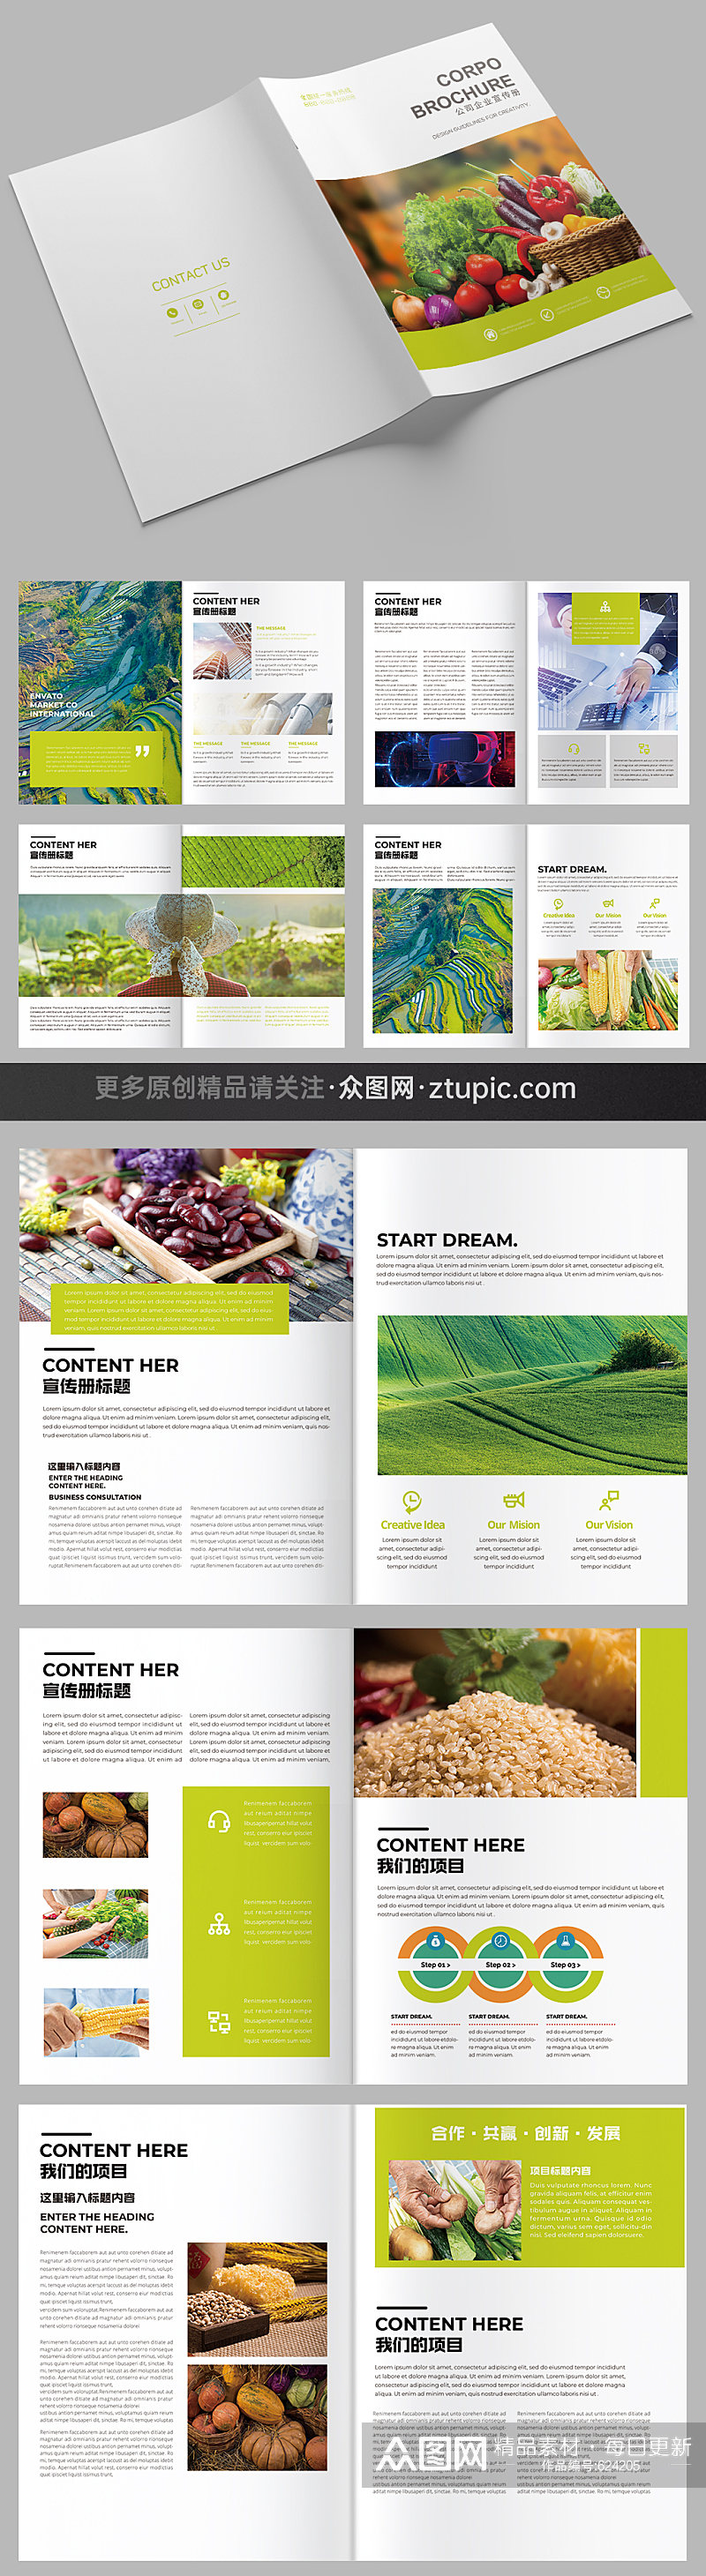 农业画册排版水稻蔬菜农产品有机农业画册农产品画册素材